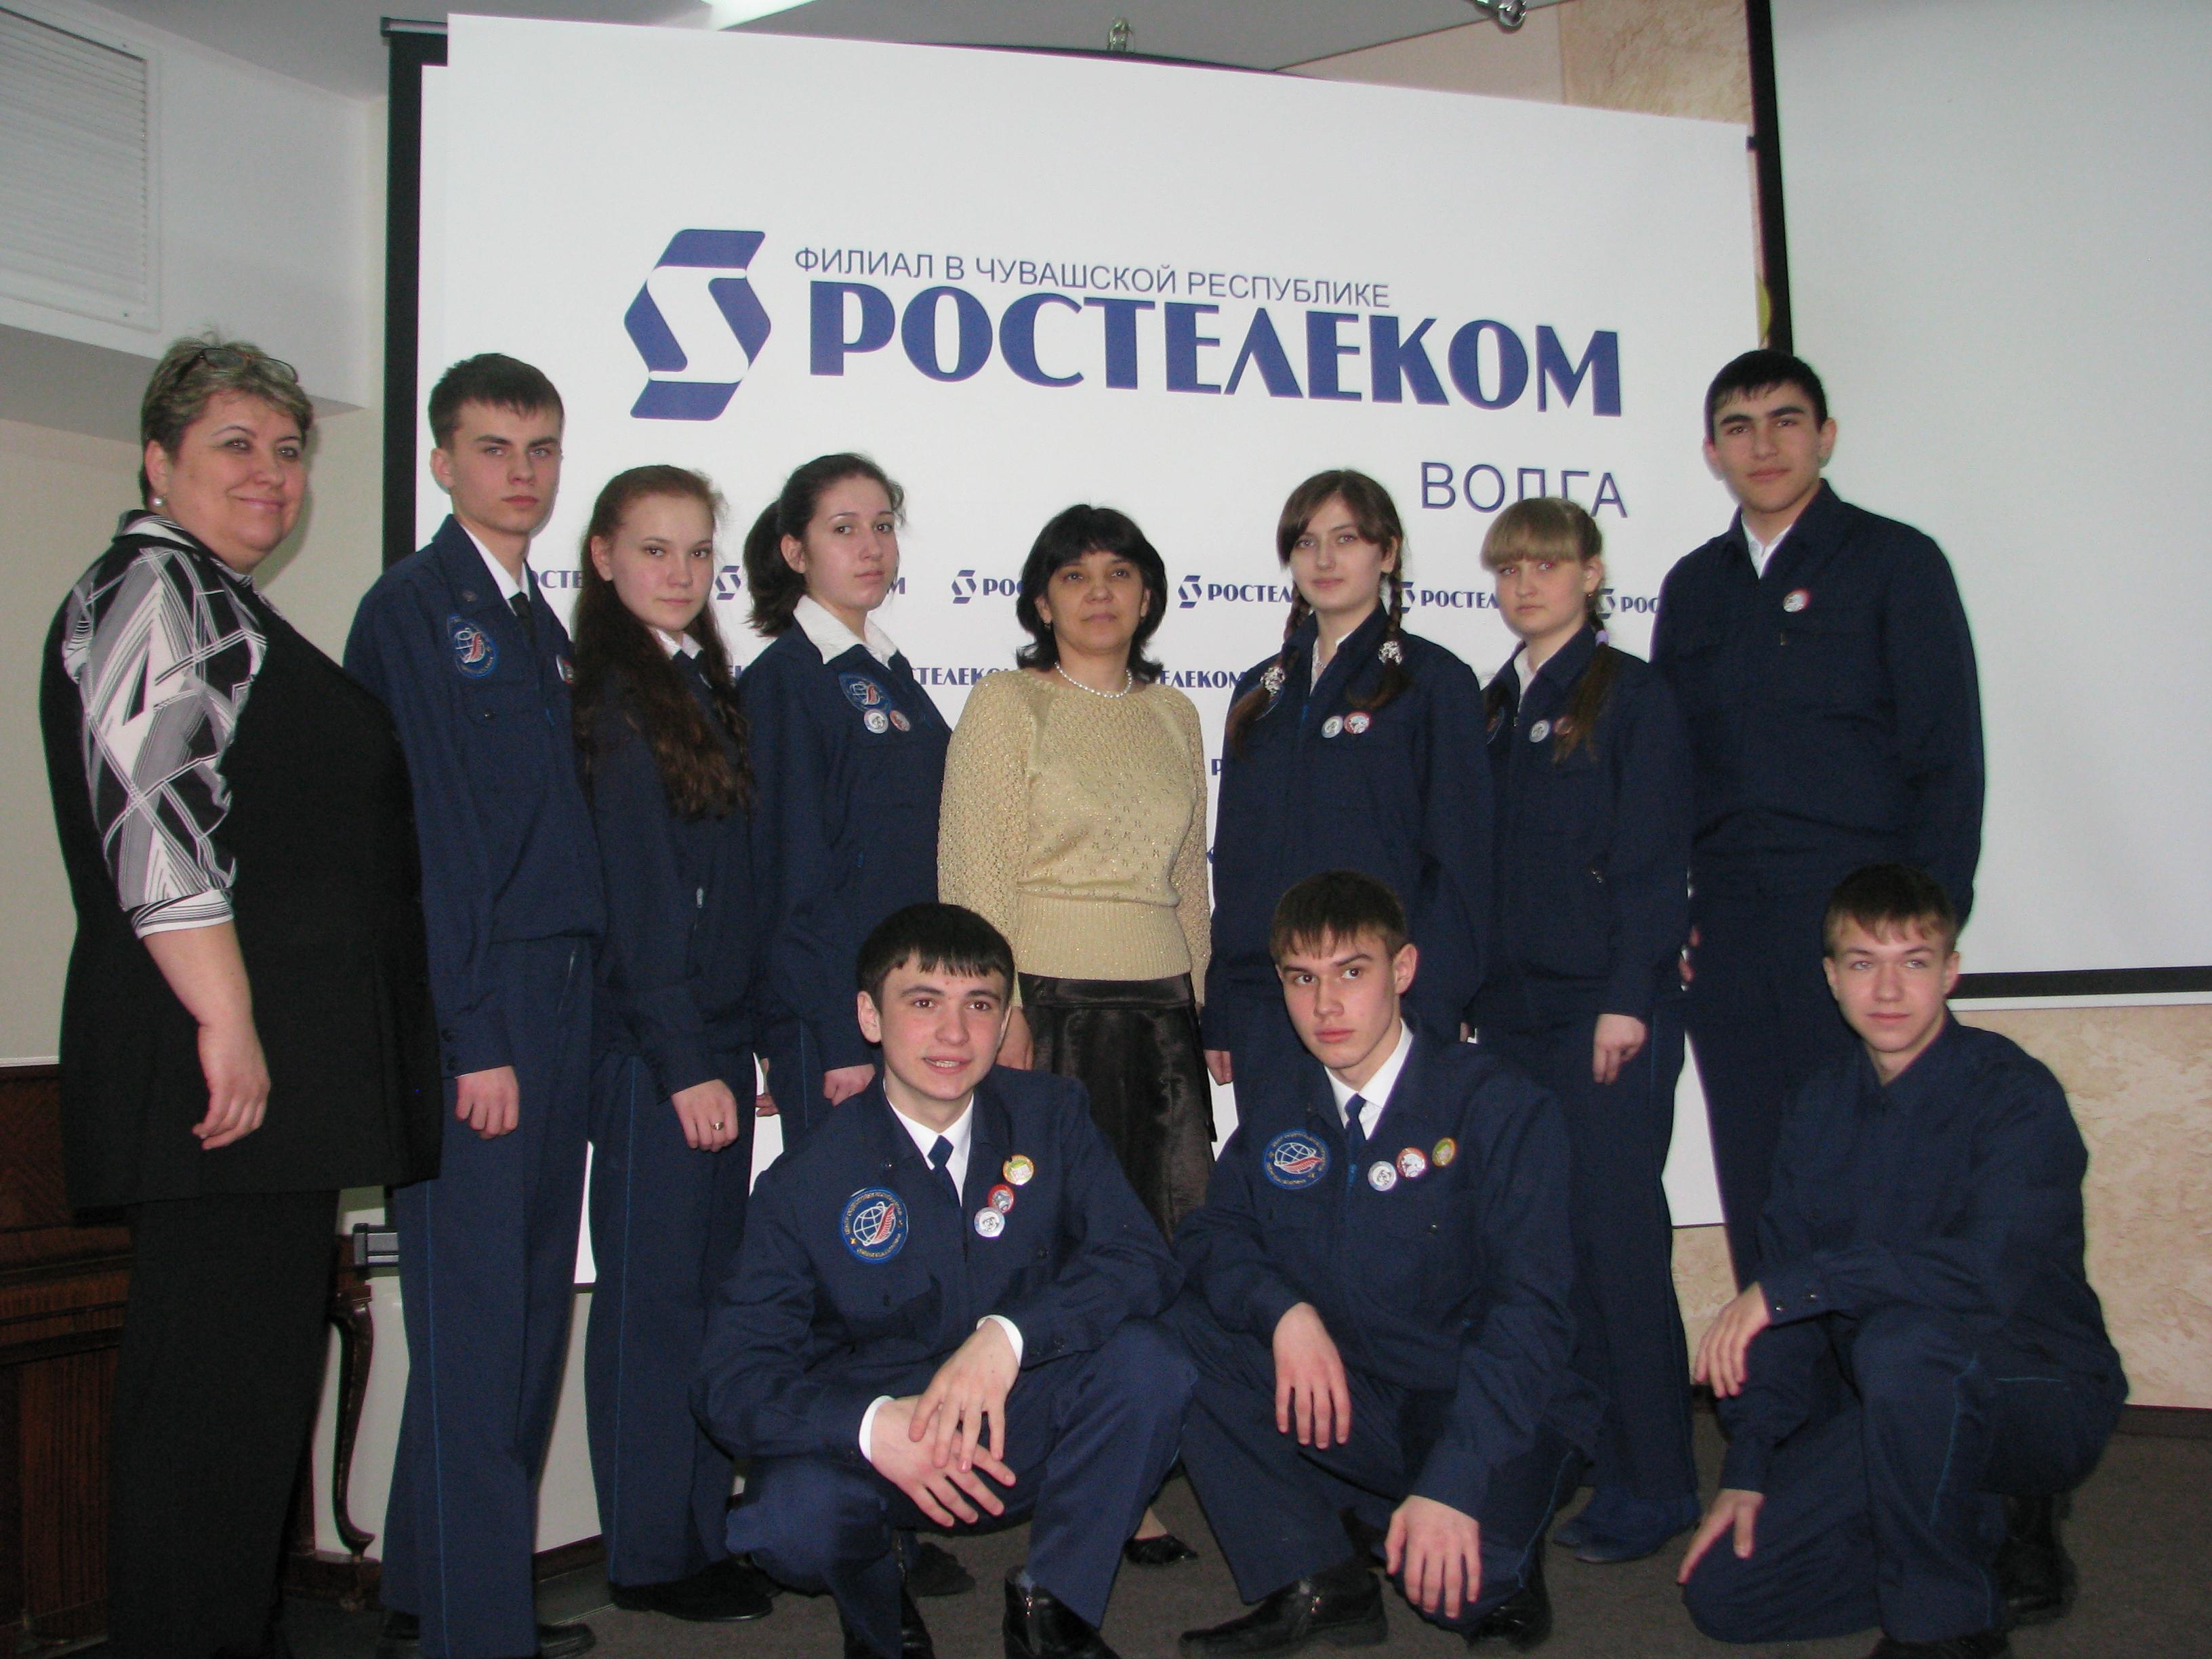 Юные космонавты СОШ №10 участники телемоста